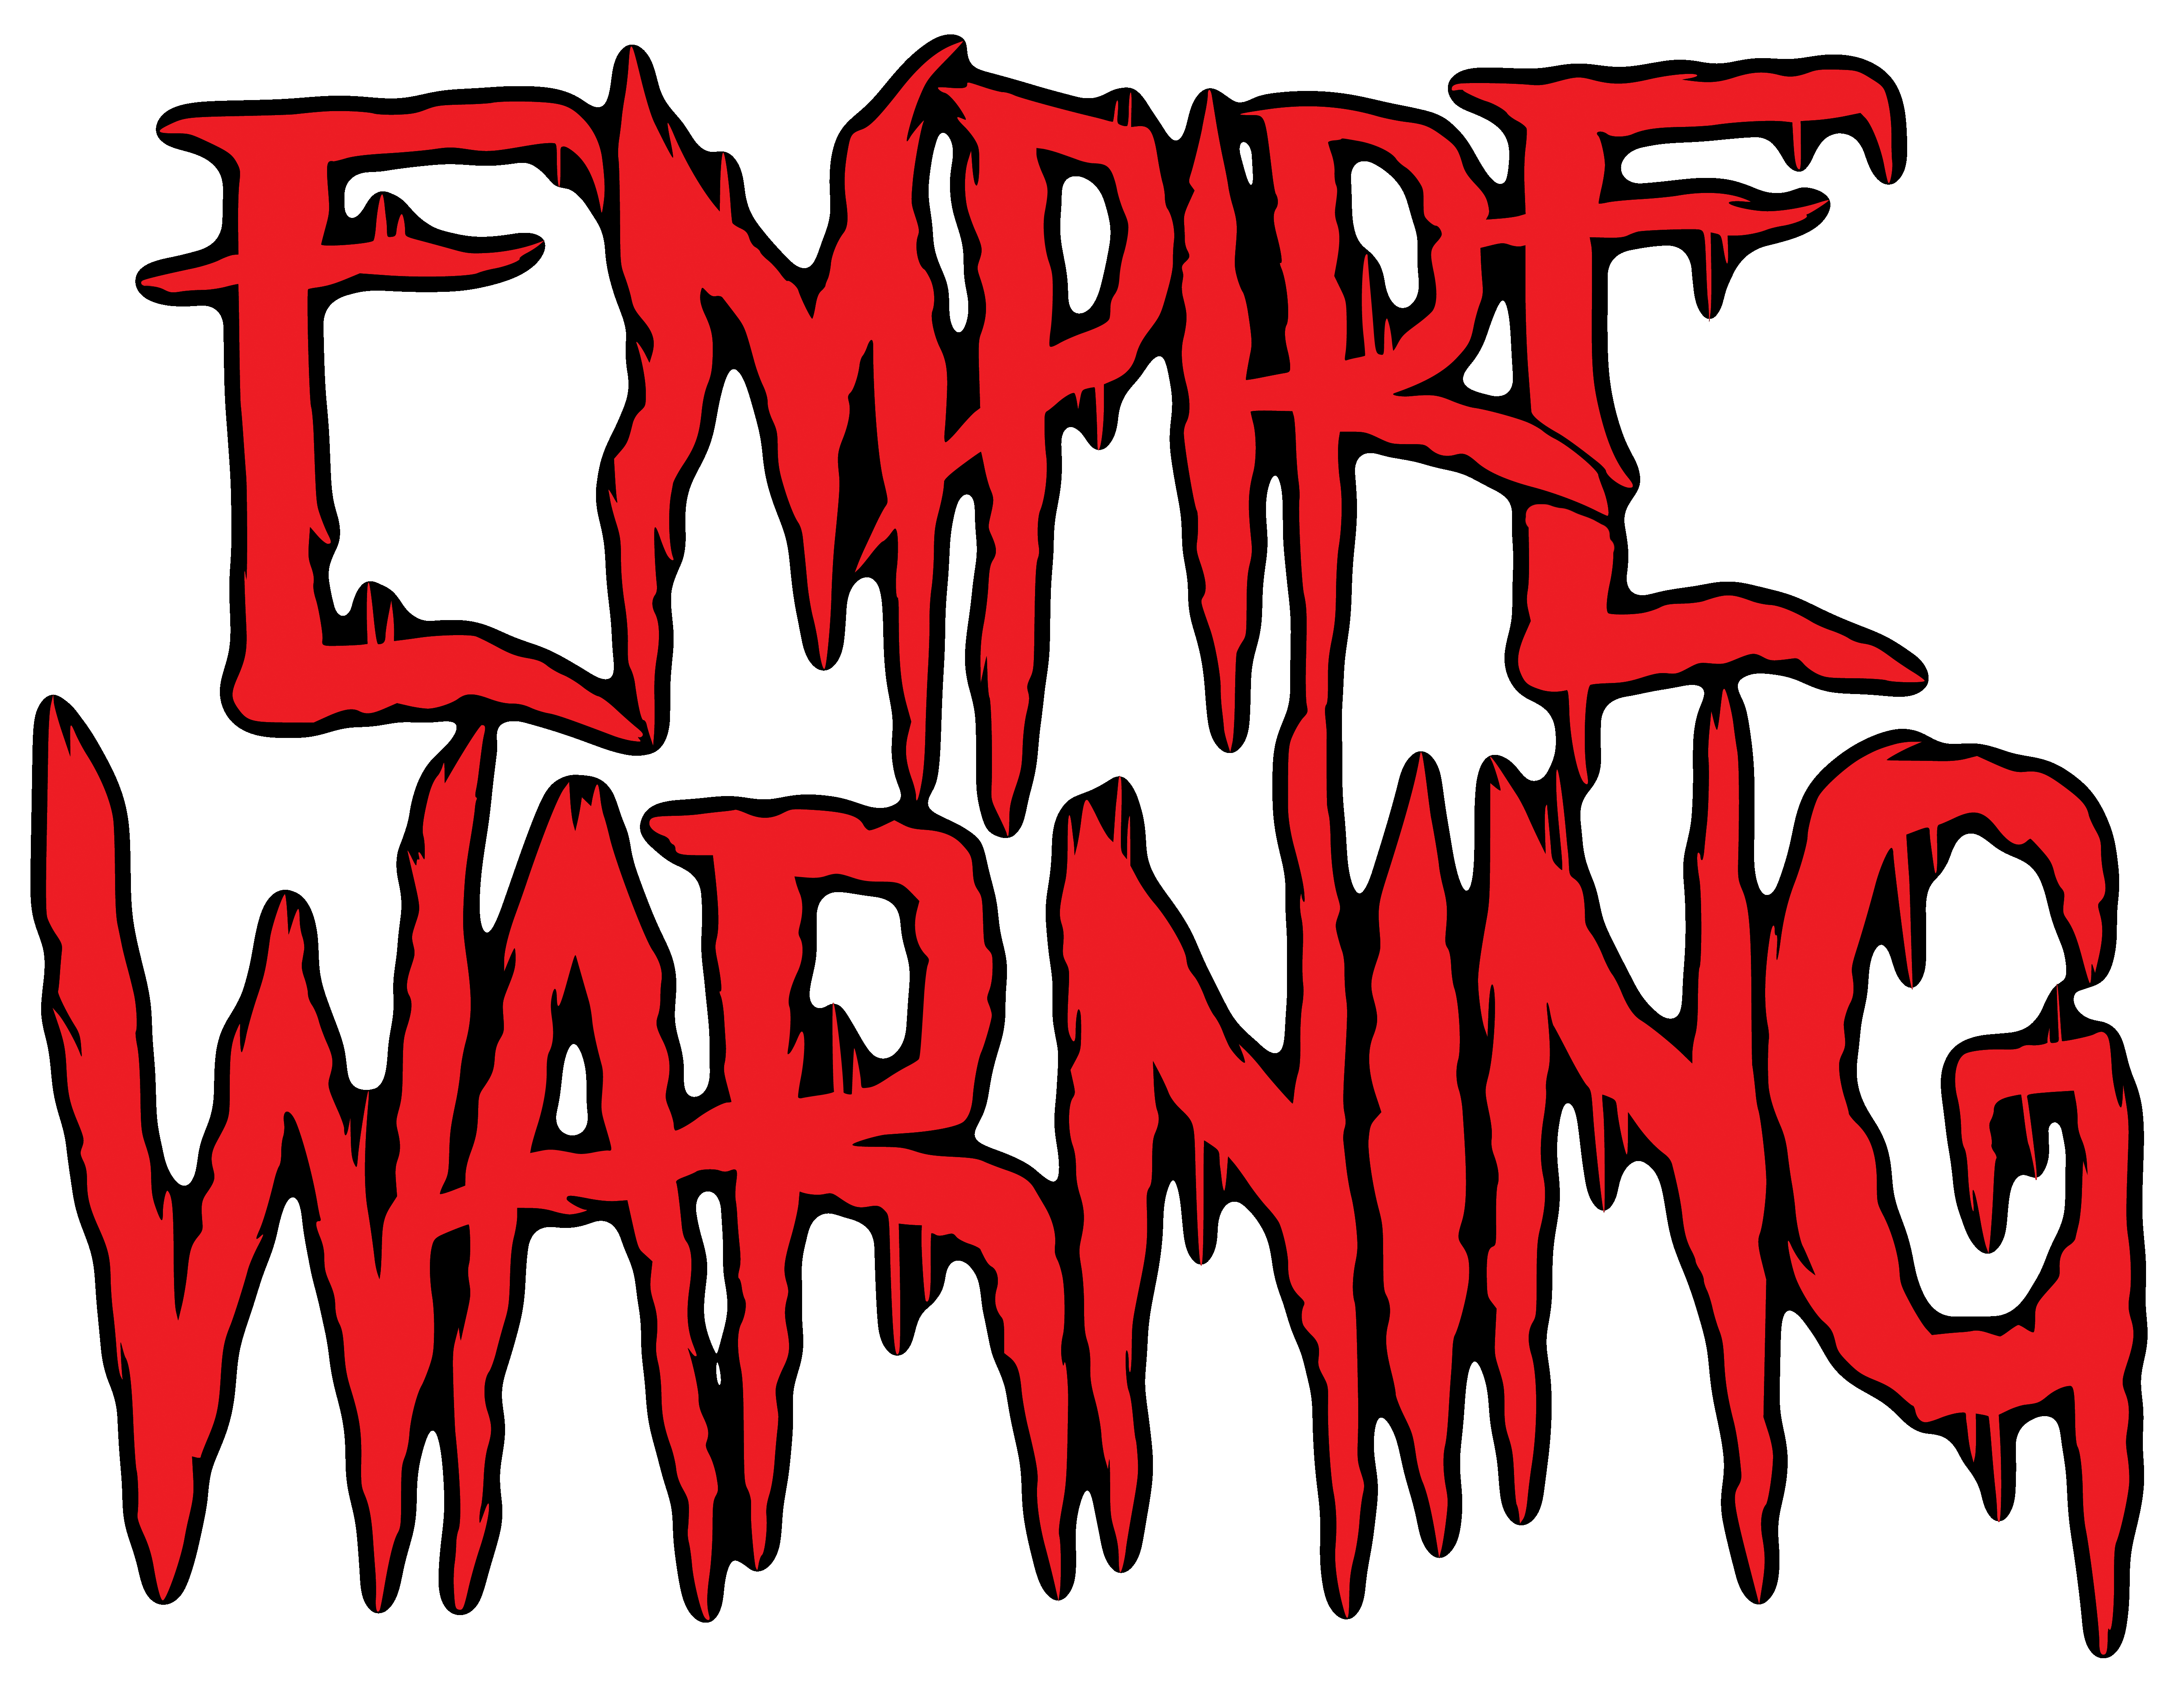 Empire Warning